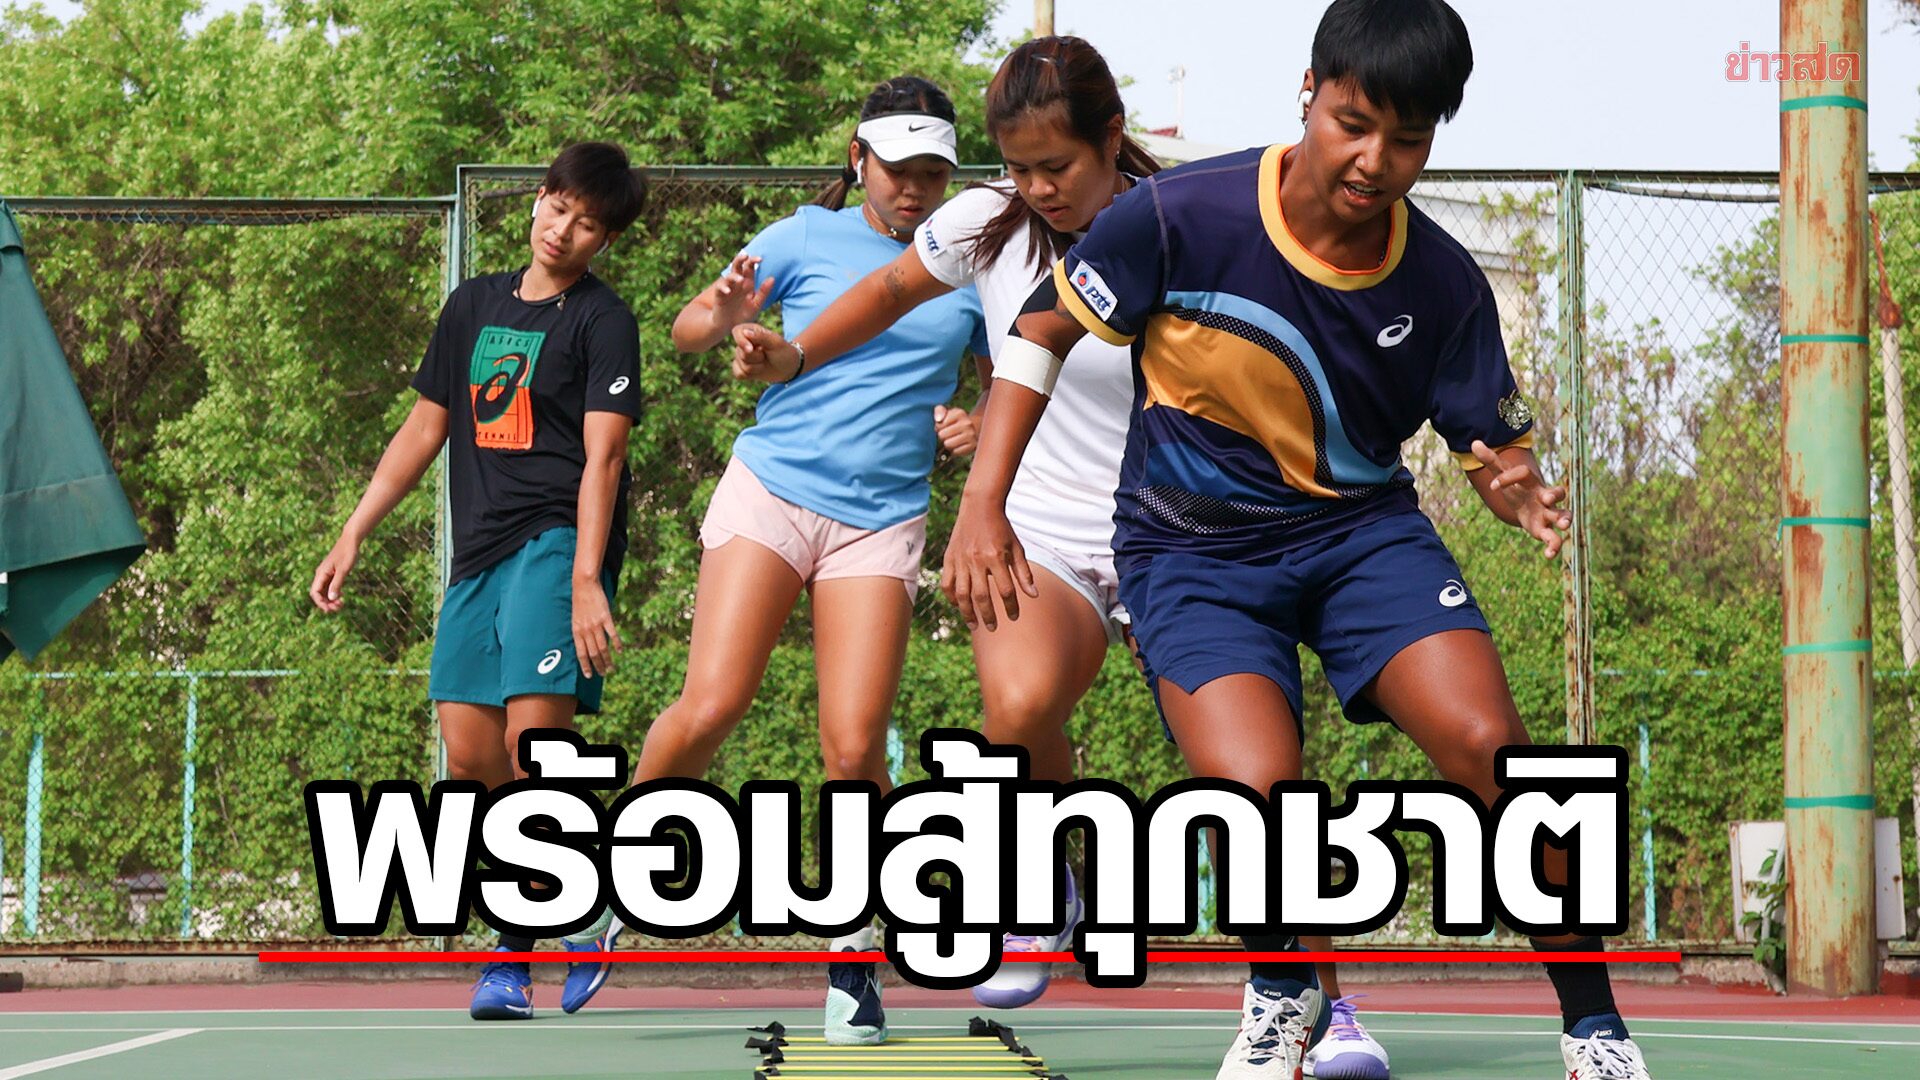 หวดสาวไทยปรับตัวได้ – โค้ชจับซ้อมเข้ม พร้อมสู้ทุกชาติศึกเทนนิสโลก บีเจเคคัพ